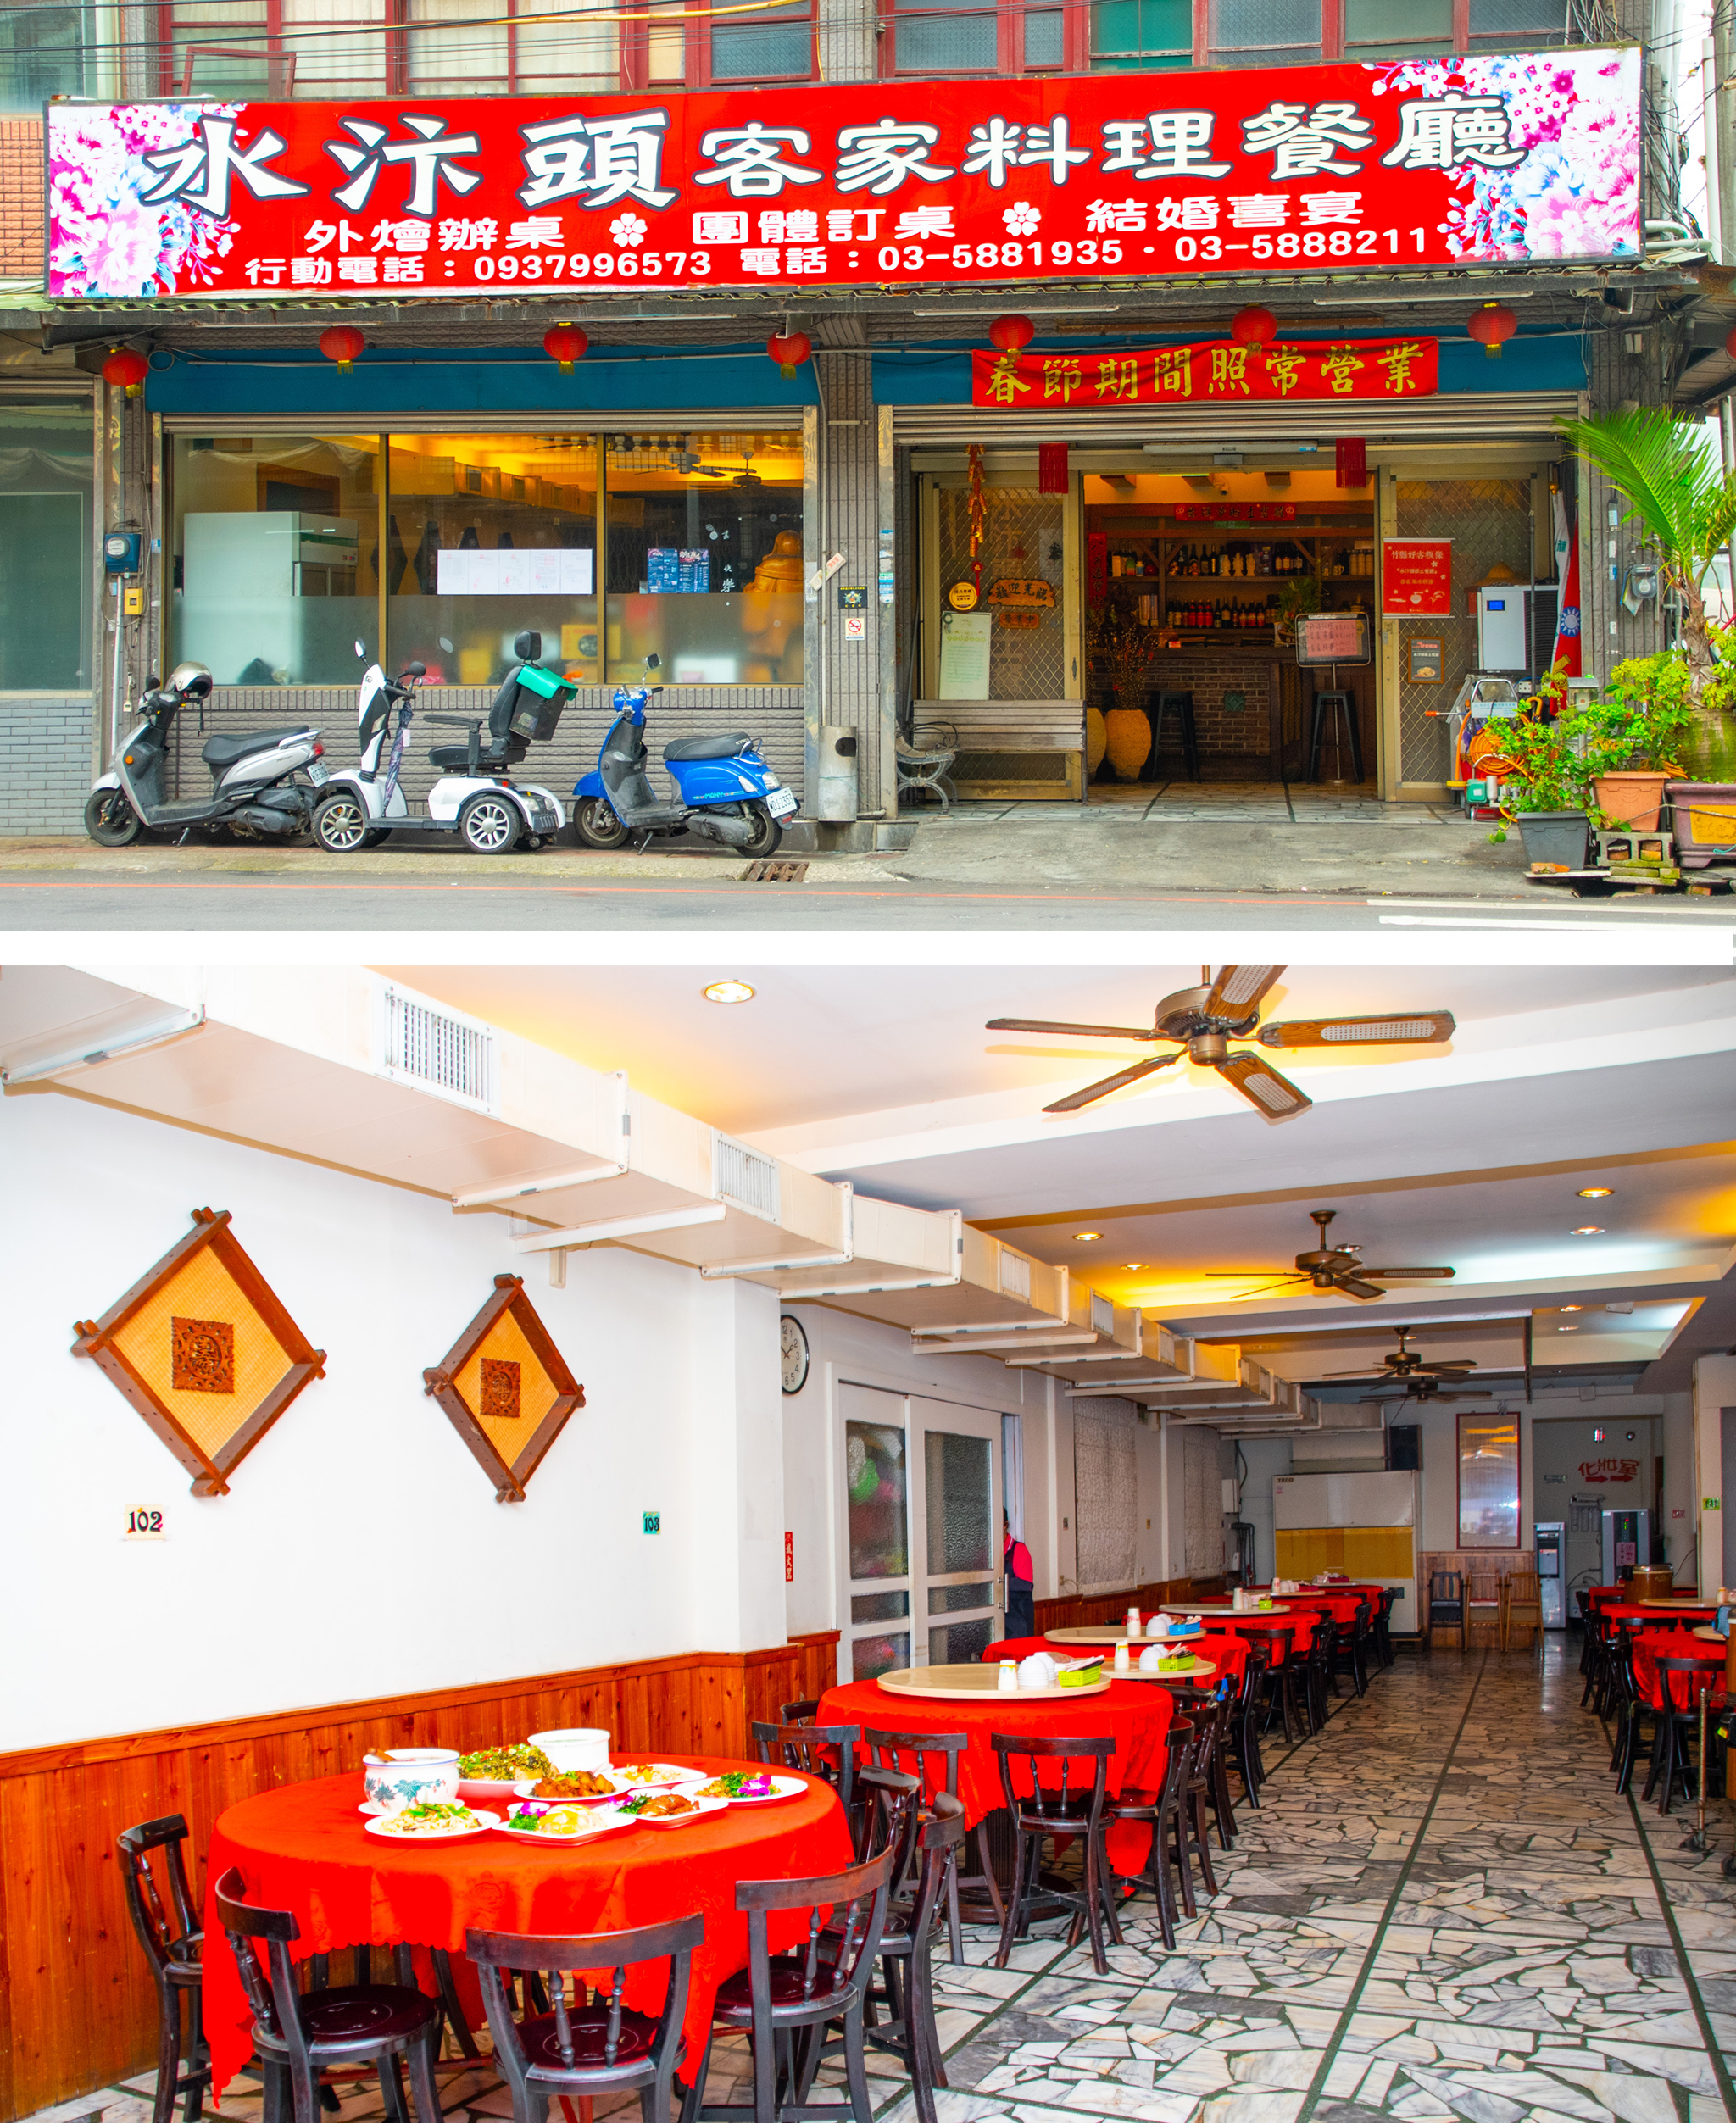 水汴頭餐廳座落於新竹縣新埔鎮新關路五埔段上。